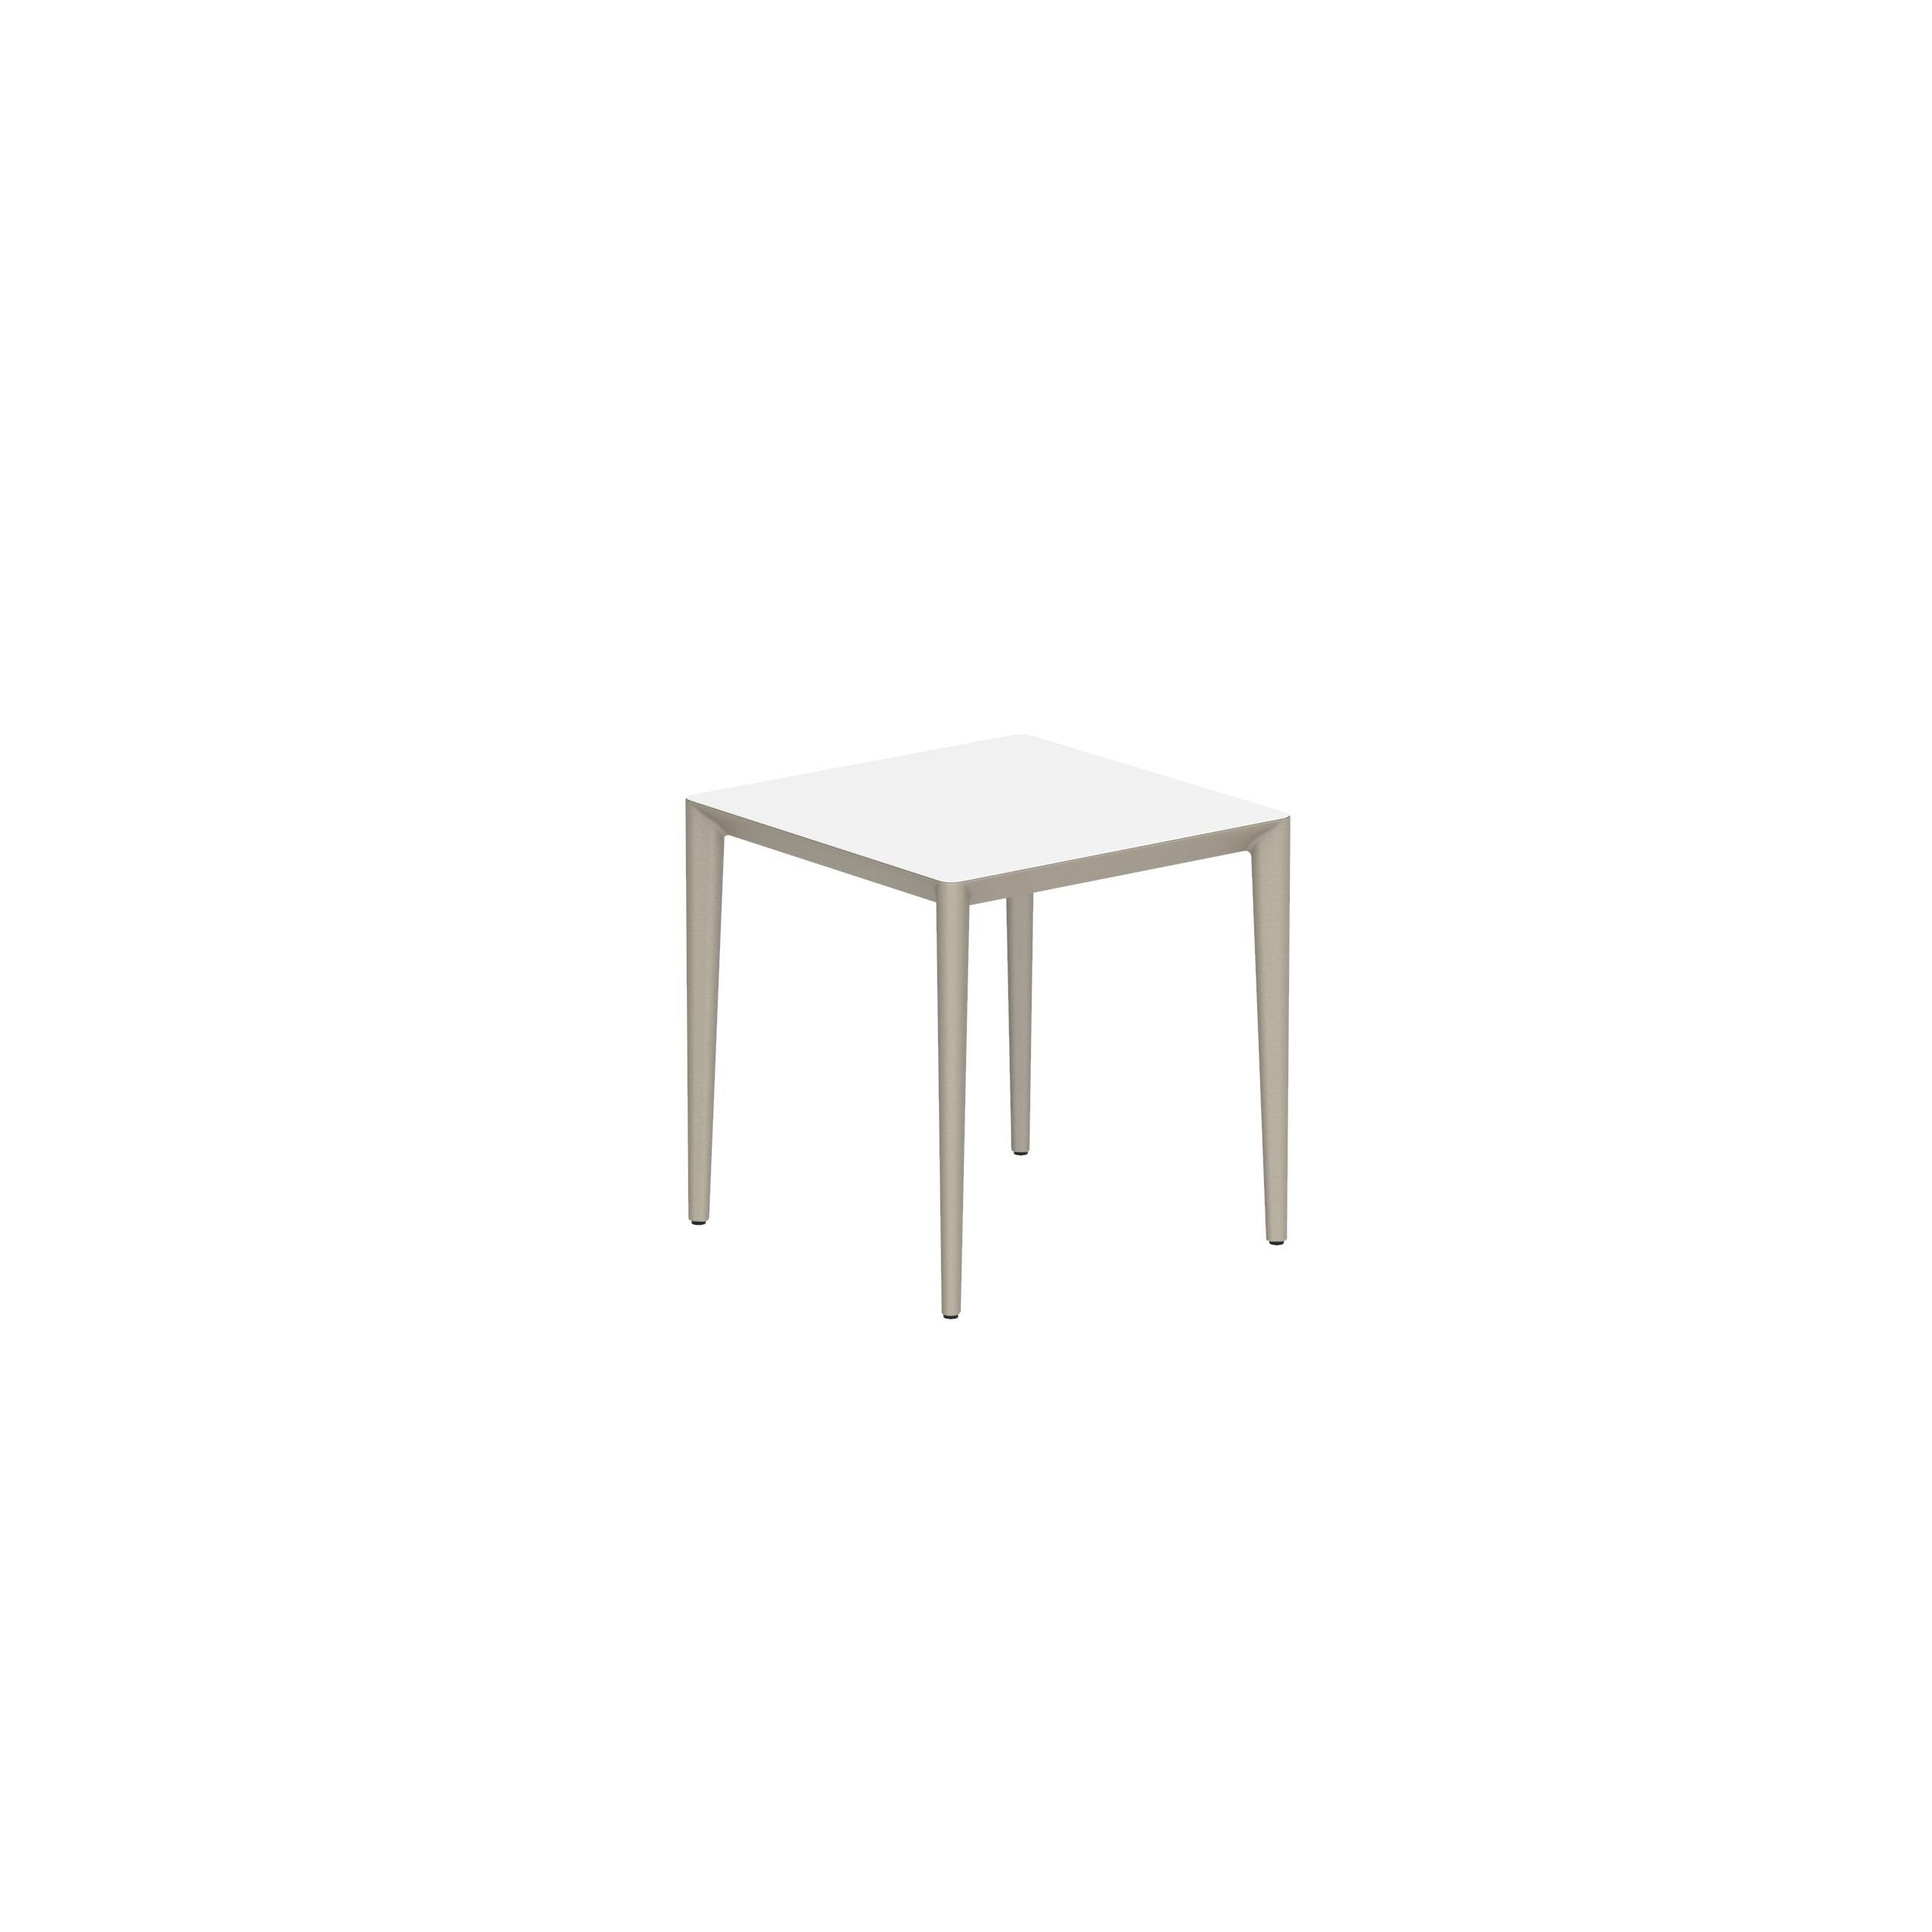 U-Nite Table 74x74cm Sand With Ceramic Tabletop In White